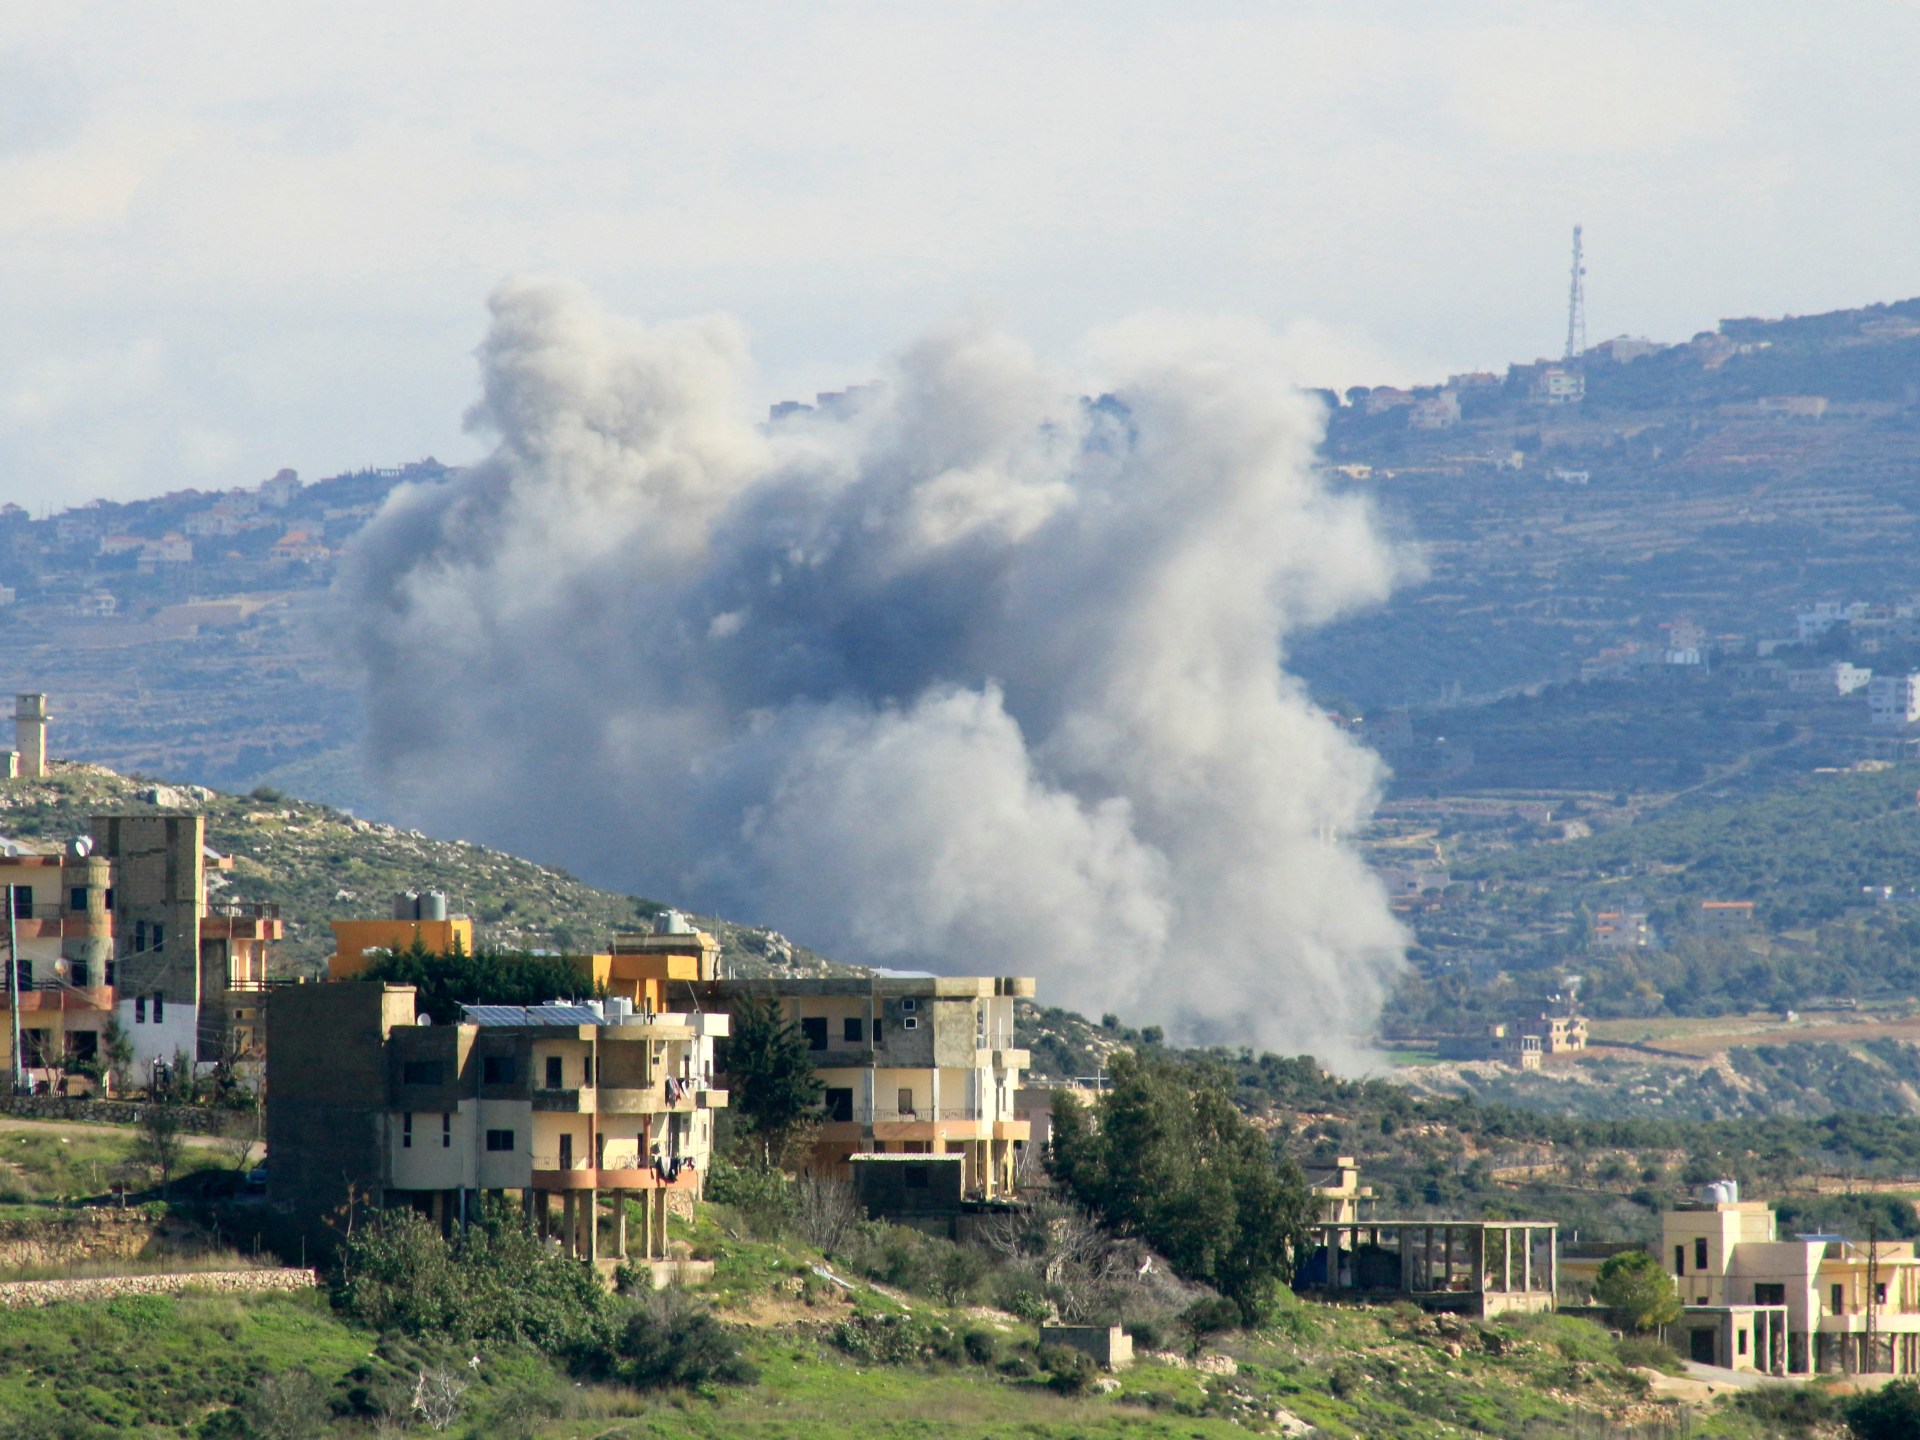 قصف متبادل جنوبي لبنان وإسرائيل تحذر من “نفاد وقت التسوية” | أخبار – البوكس نيوز